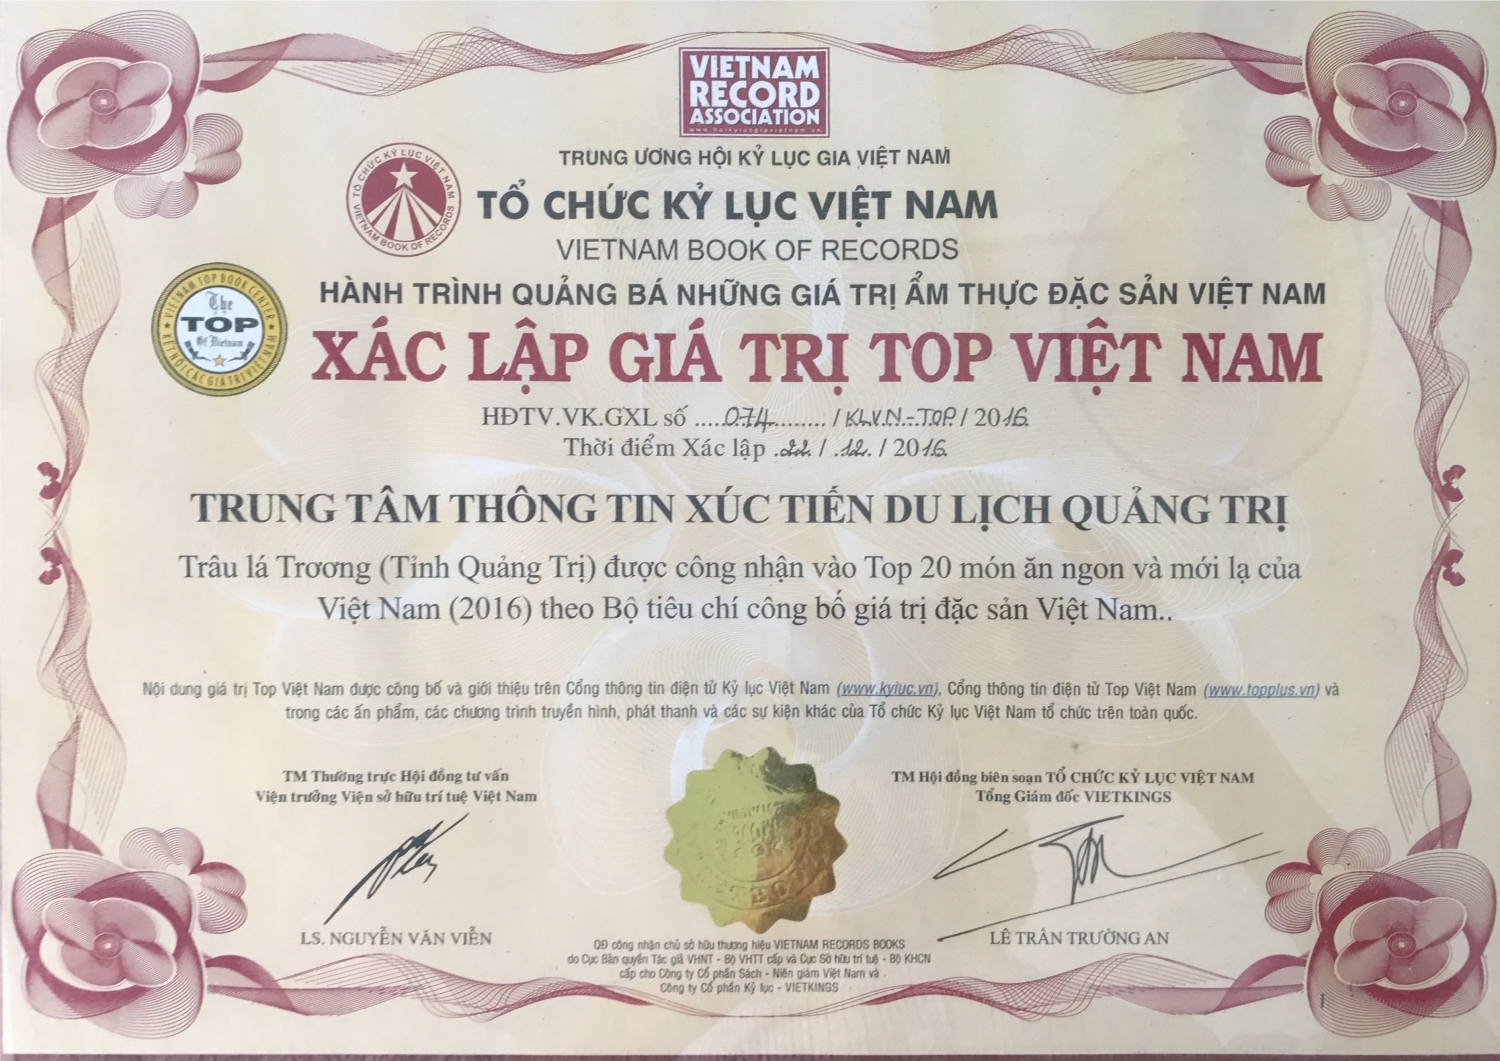 Thịt trâu lá trơng - Top “20 món ăn Việt Nam mới lạ” ở Quảng Trị